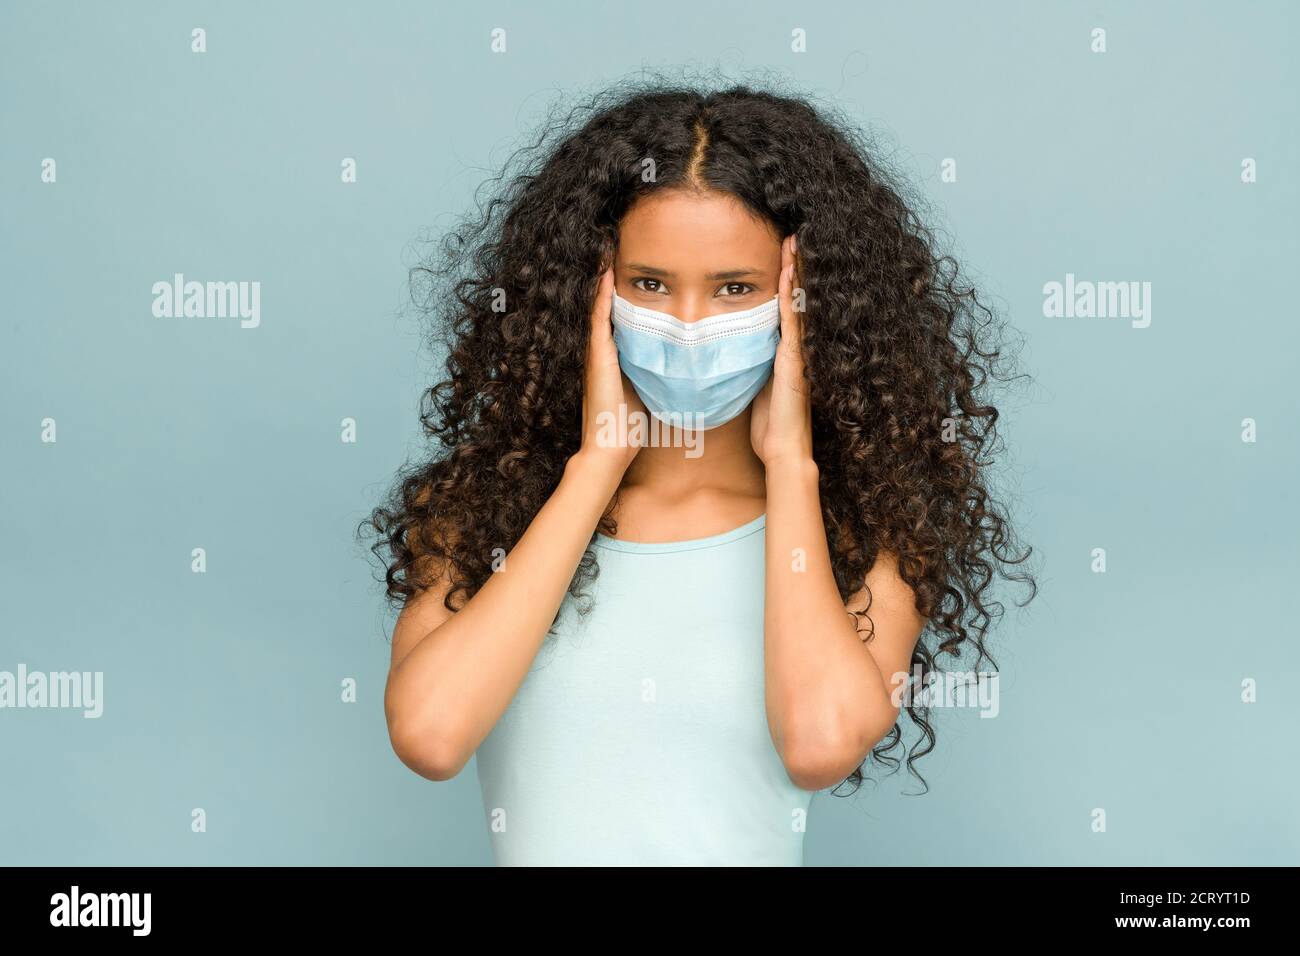 Attraktive junge Dominikanerin mit langen lockigen Haaren trägt ein Gesichtsmaske während des Coronavirus oder Covid-19 Pandemie in einem Konzept der neuen Normalität l Stockfoto